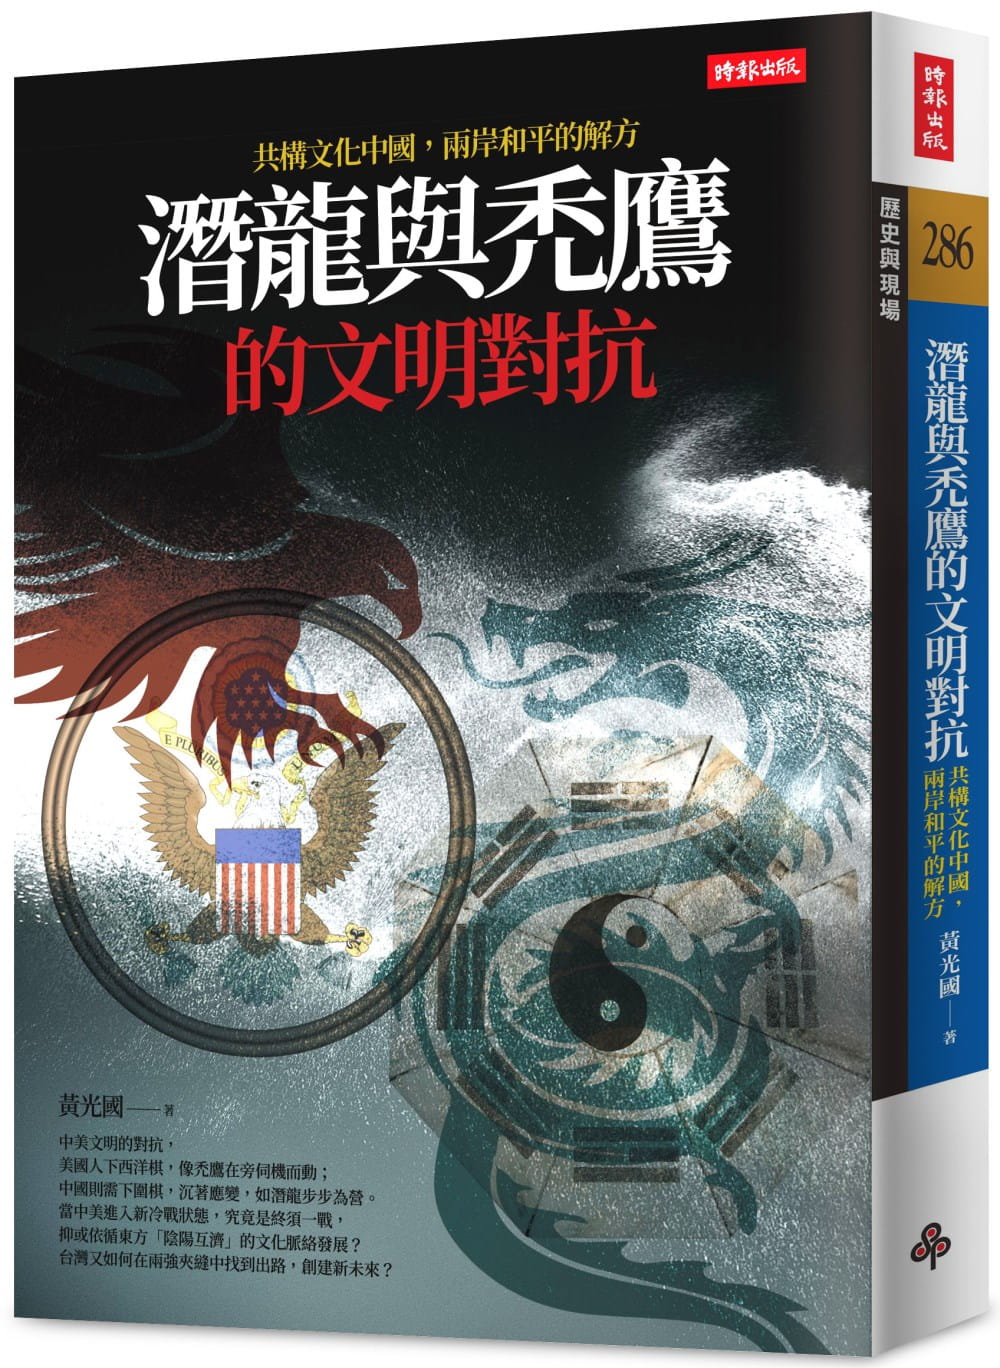 潛龍與禿鷹的文明對抗：共構文化中國，兩岸和平是唯一解方